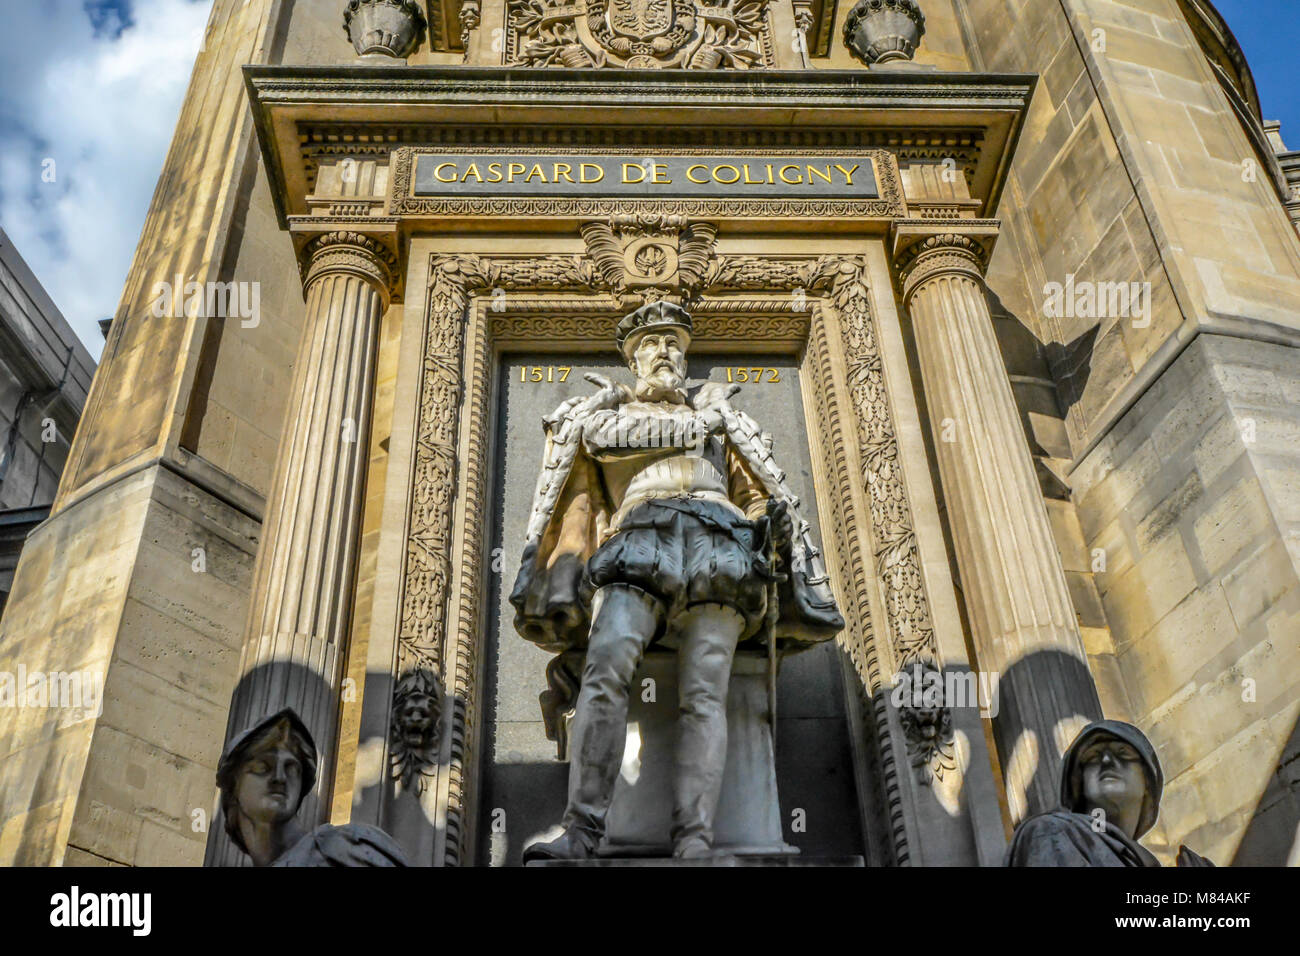 Das Monument de l'Amiral Gaspard de Coligny auf der Rue de Rivoli in der 1. Arrondissement von Paris Frankreich Stockfoto